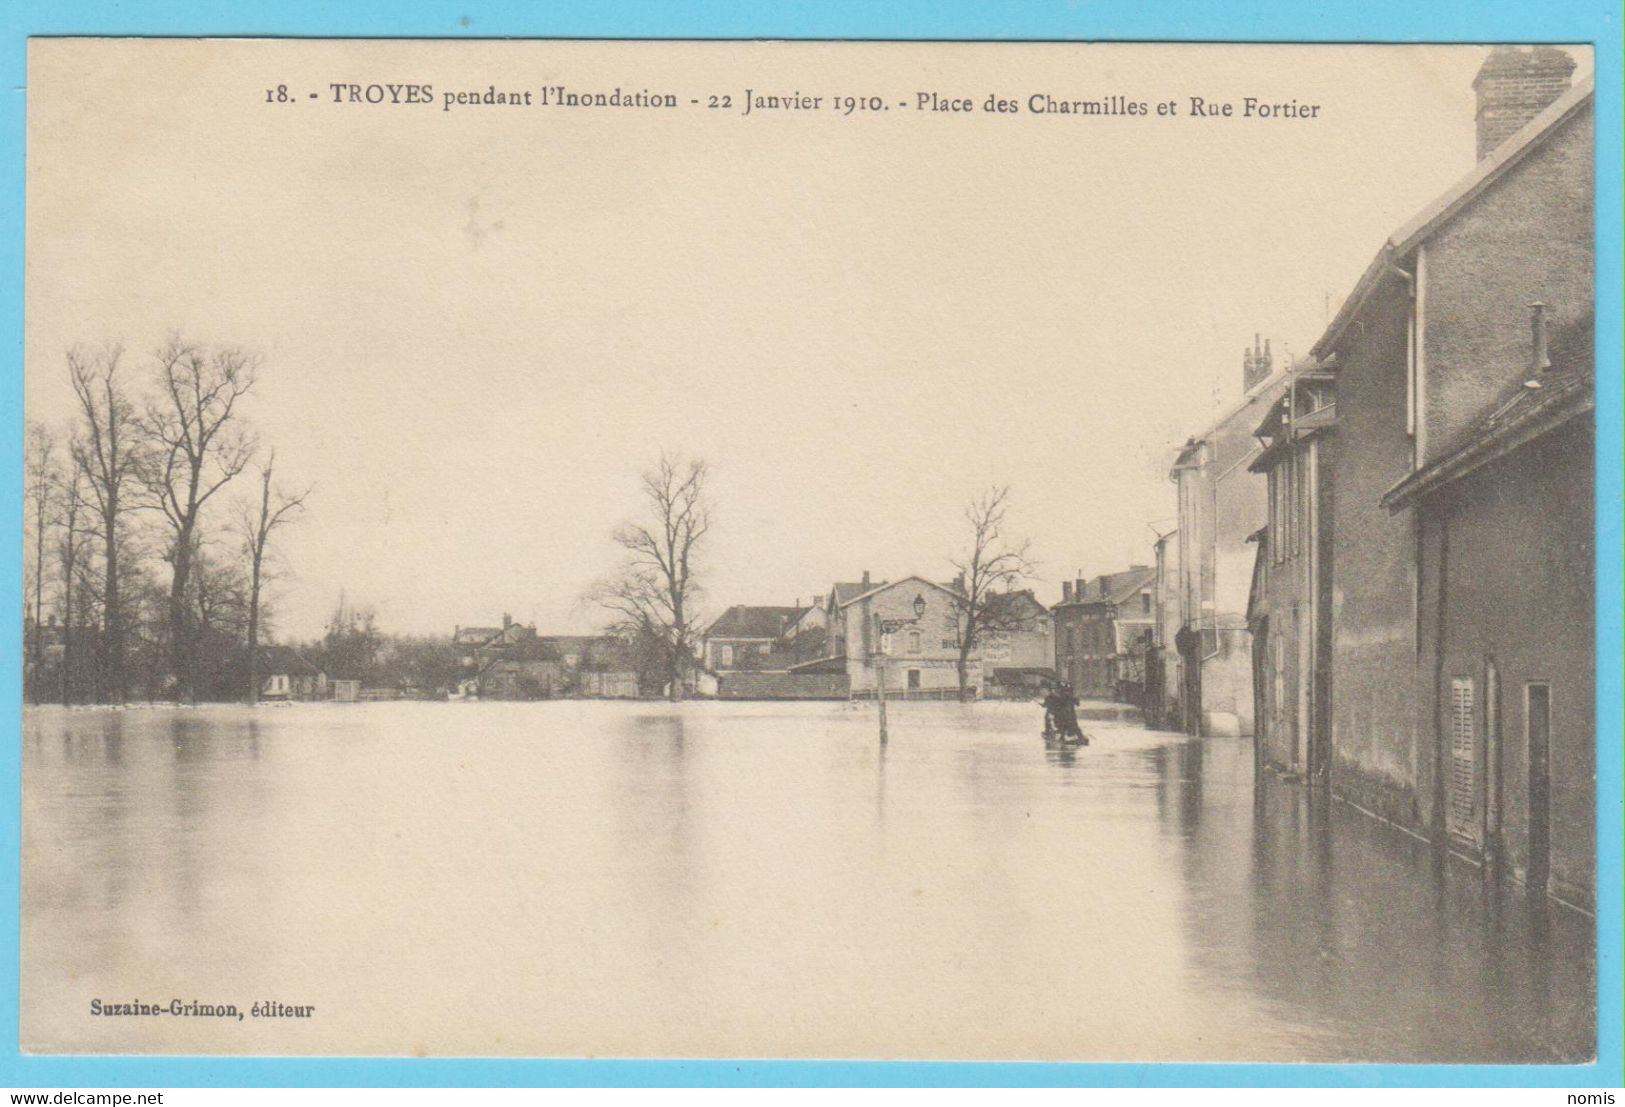 J.P.S. 12 - C.P. 80 - Inondations du 21 janvier 1910 - Diverses vues - Lot indivisible de 23 cartes